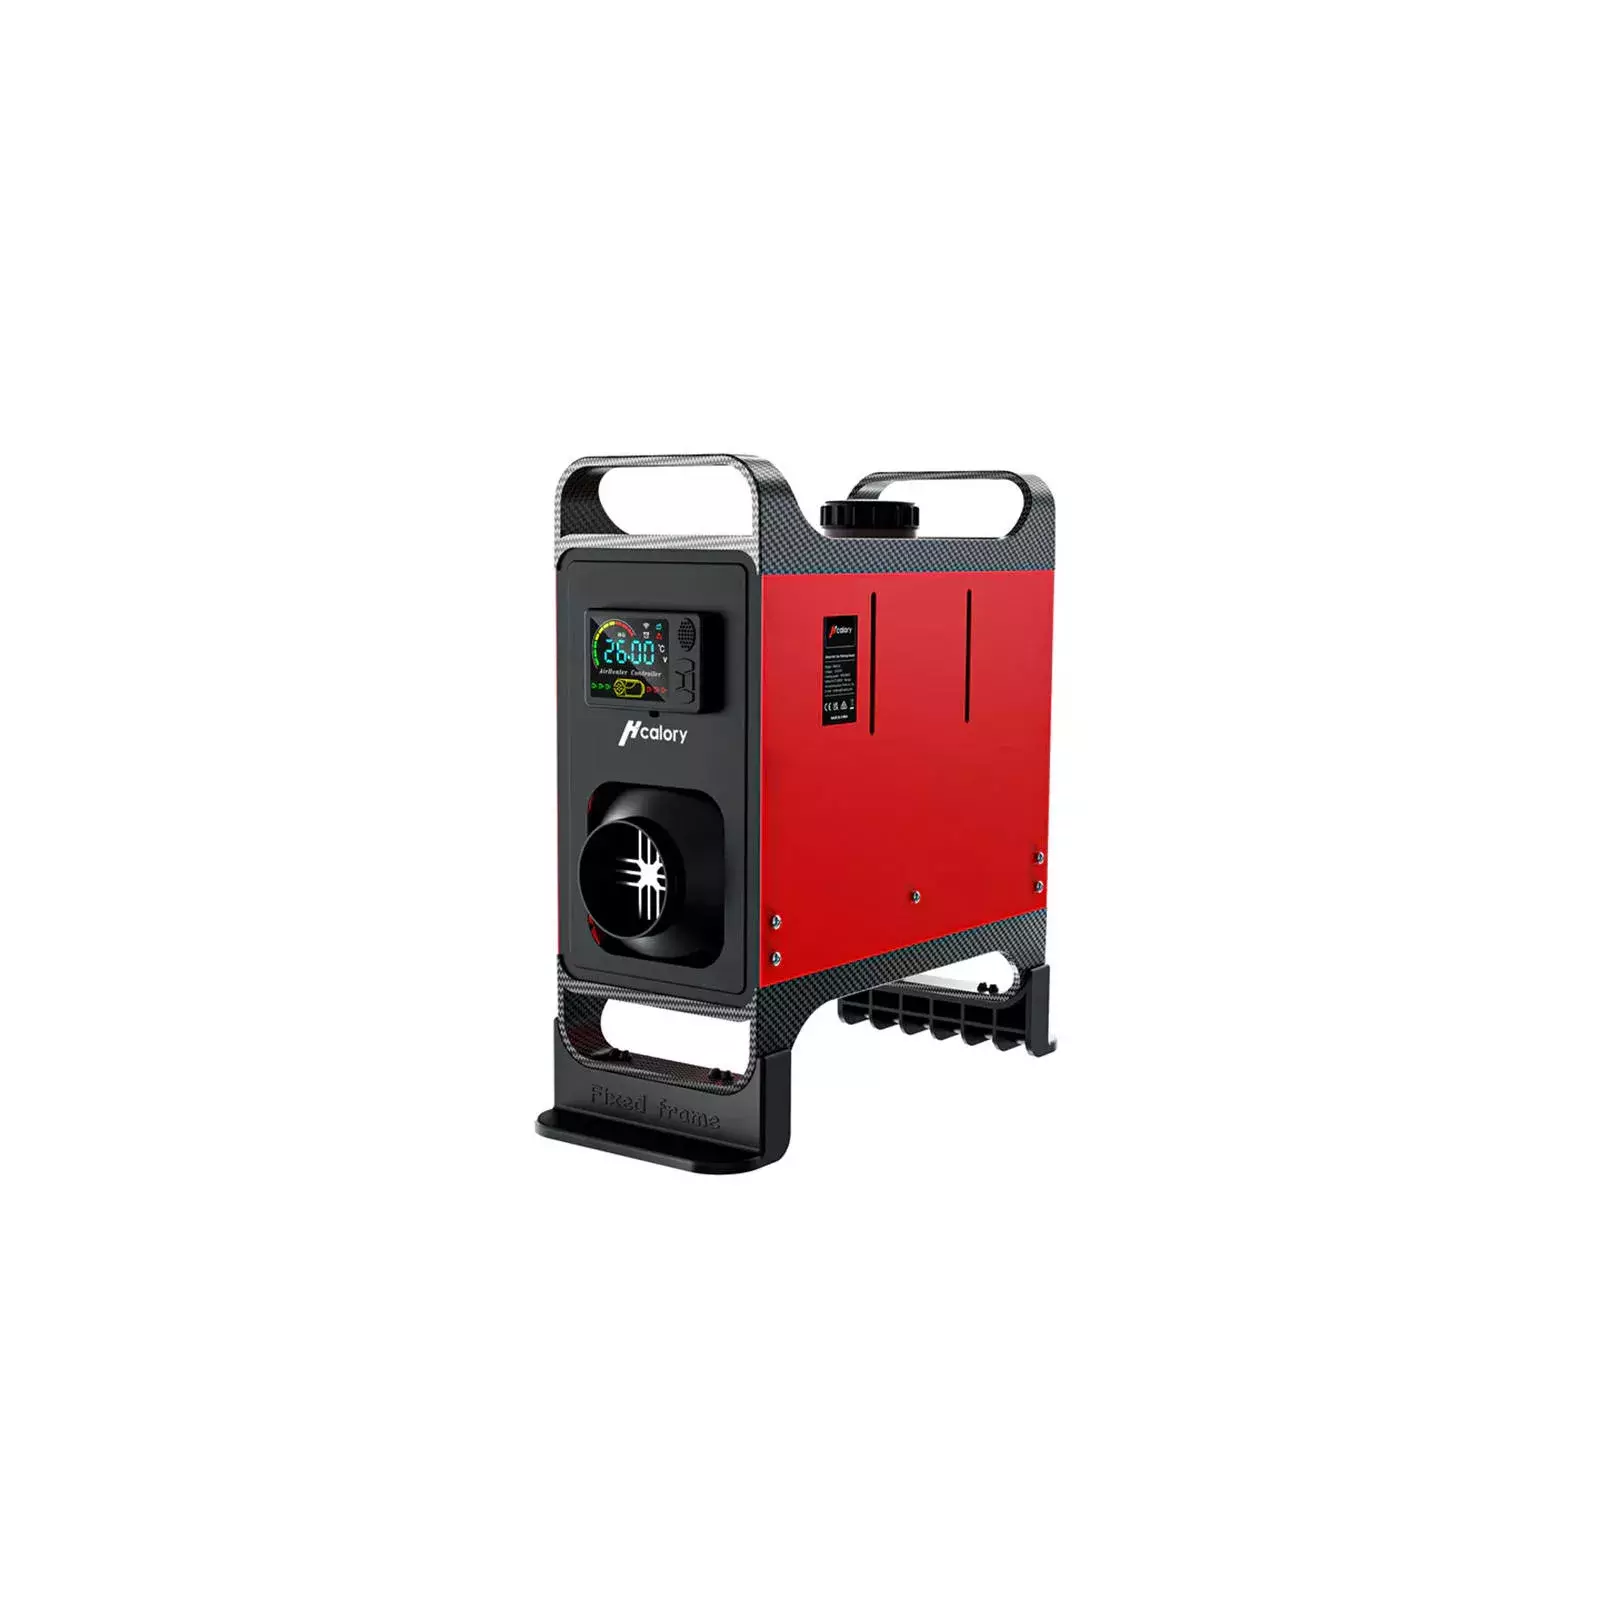 Parking heater / heater HCALORY HC-A02, 8 kW, Diesel, red